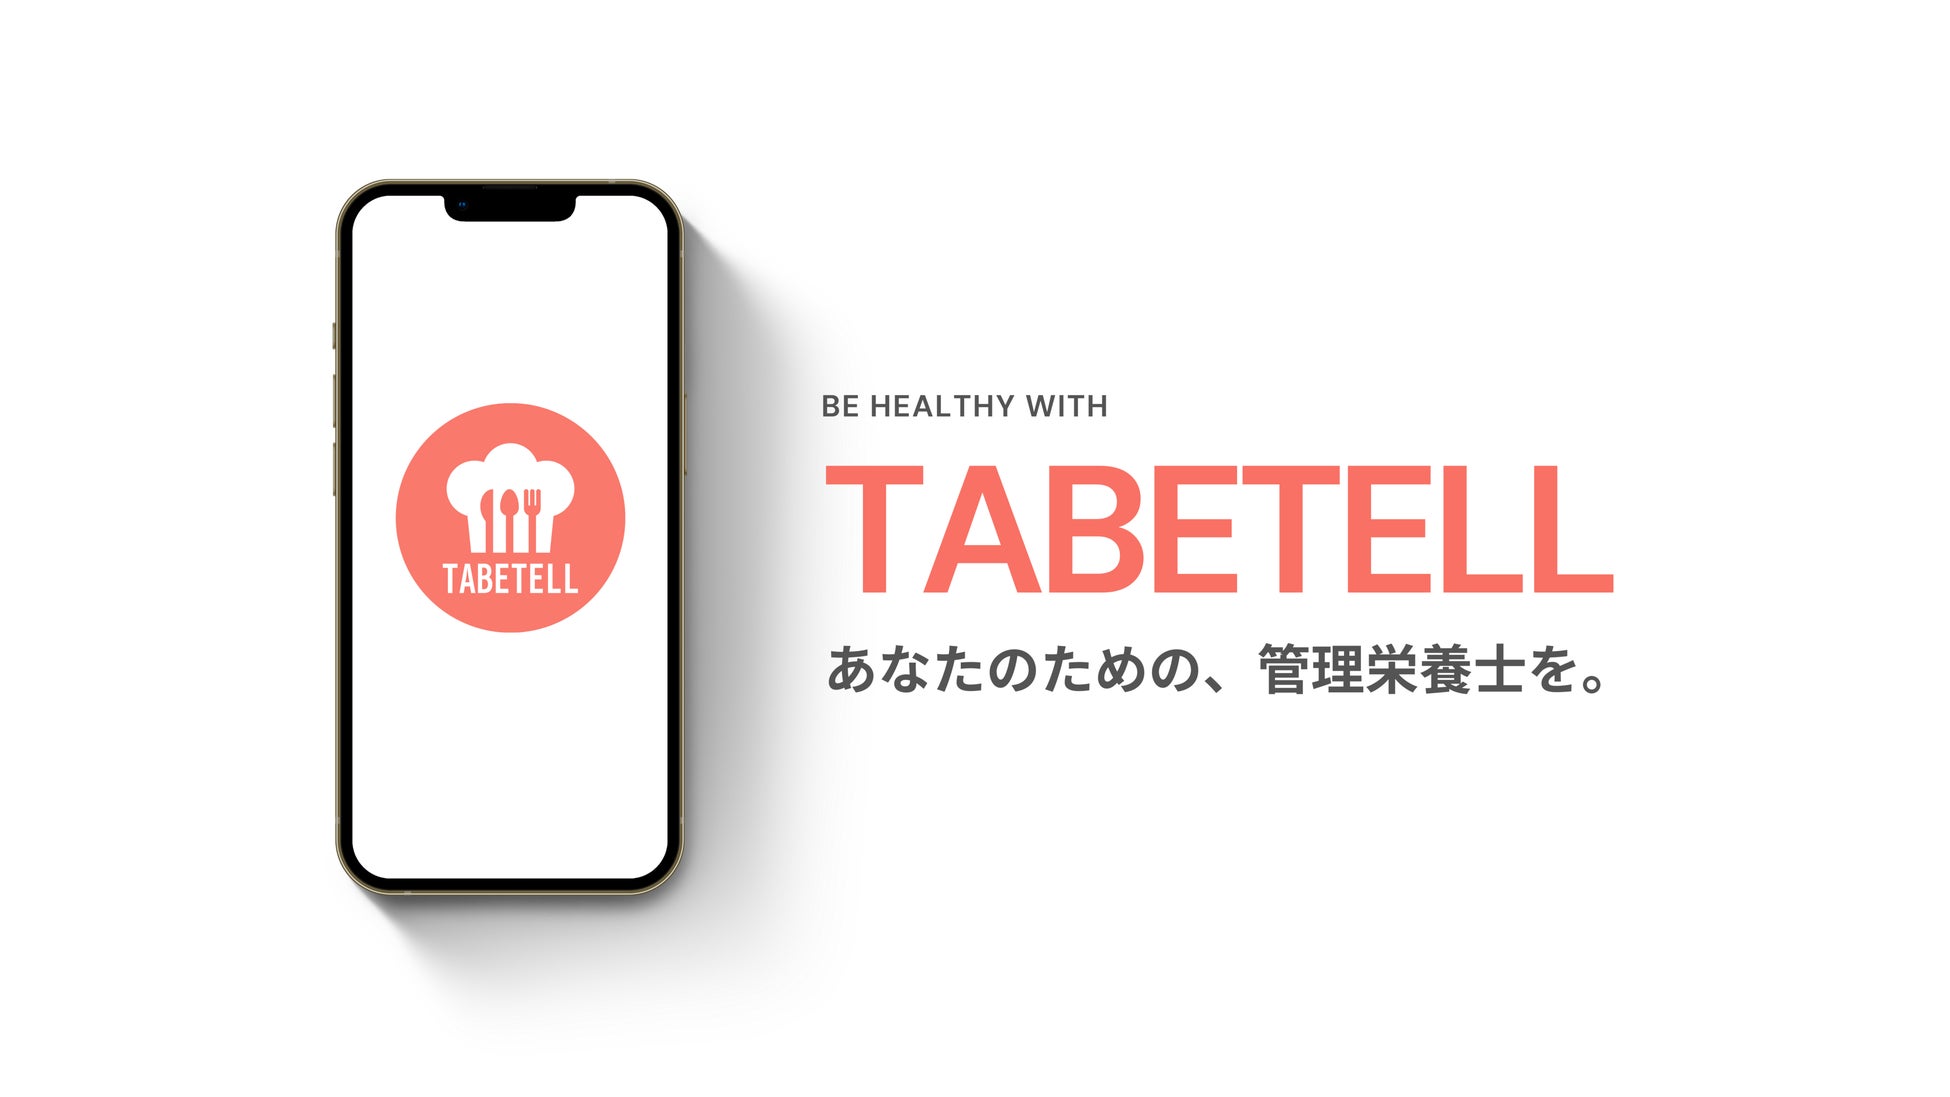 食の悩みを管理栄養士が直接解決するアプリ「TABETELL」の提供を開始しました